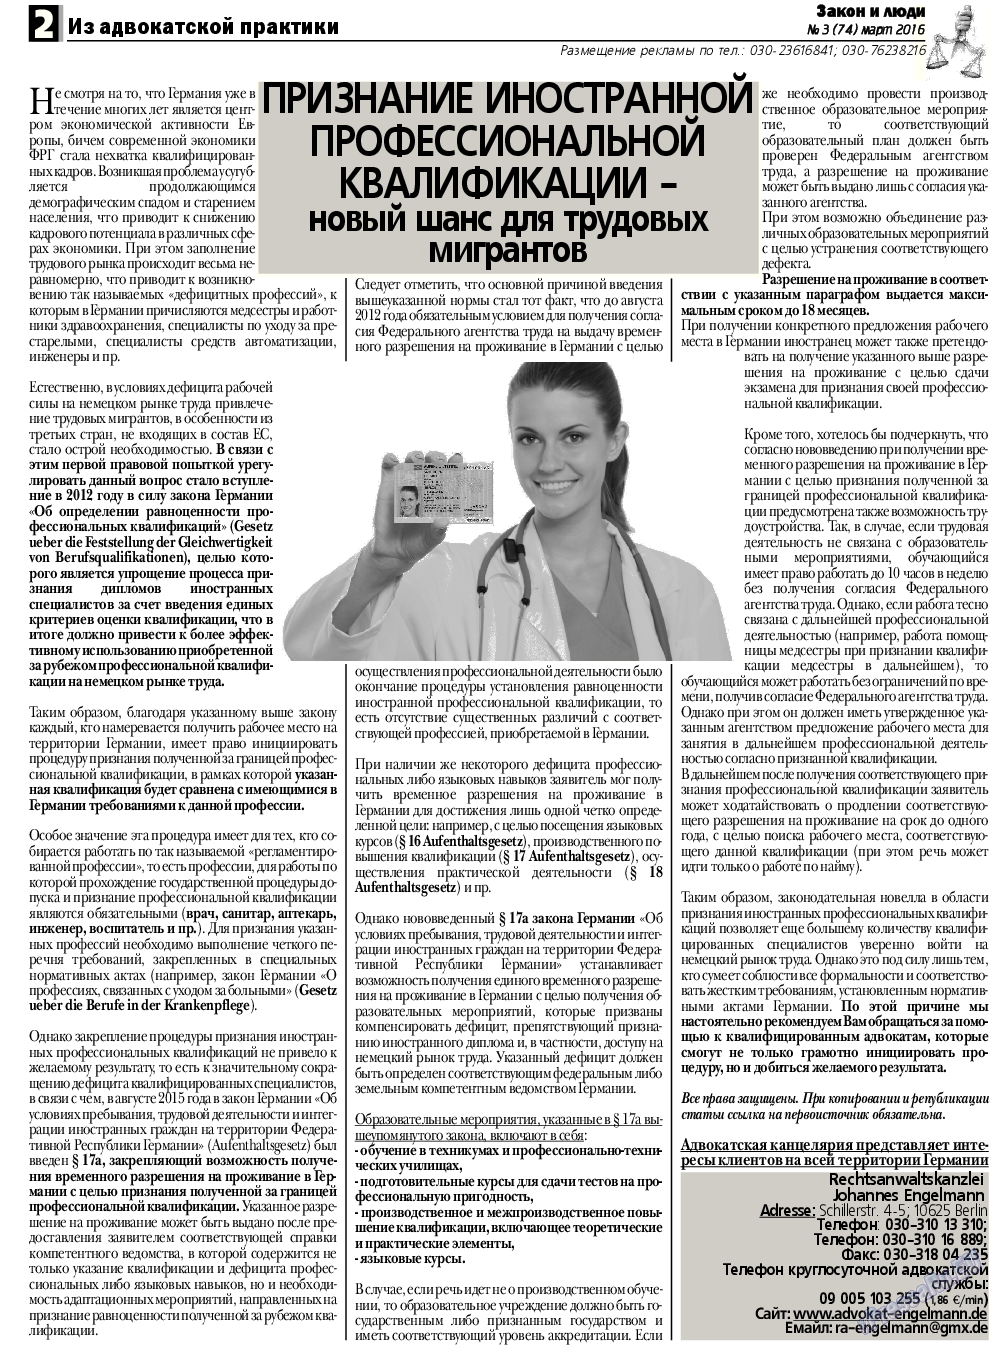 Закон и люди, газета. 2016 №3 стр.2